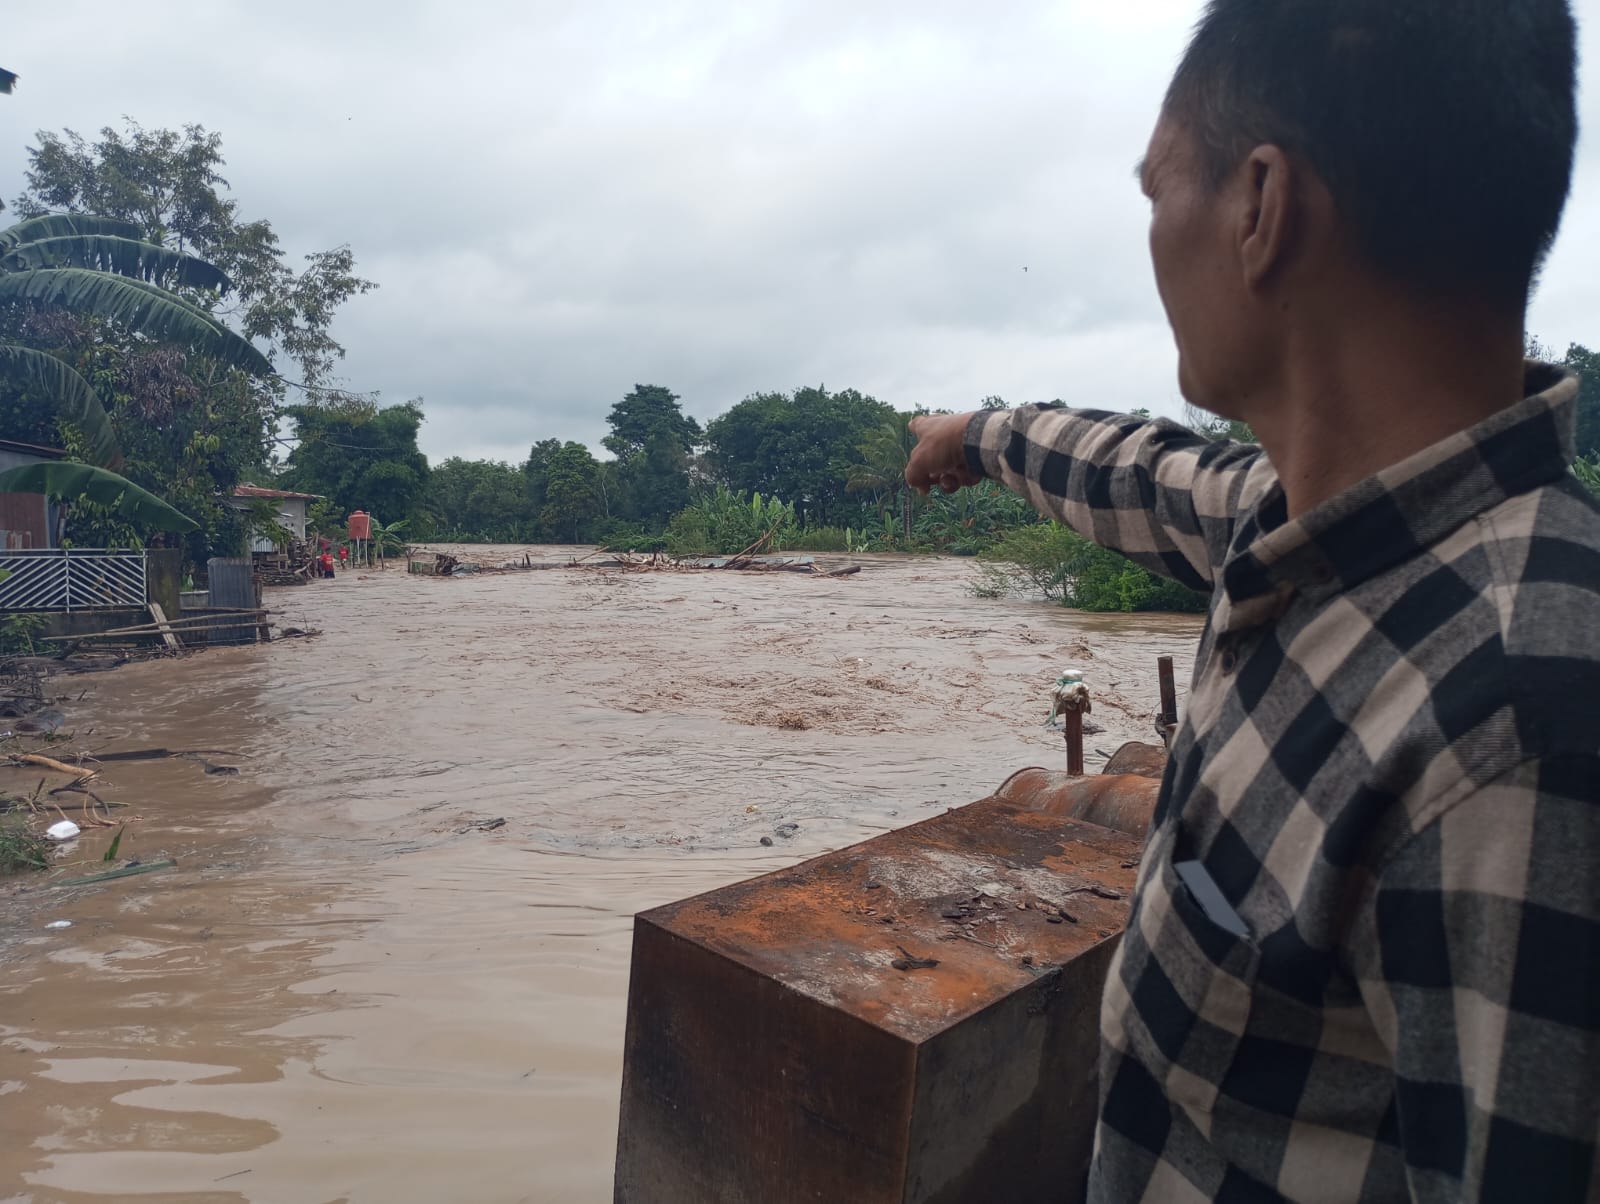 Harapan Warga Kelurahan Kota Jaya Kepada Pemkab Lahat Terkait Permasalahan Banjir, Ini Jawaban PJ Bupati Lahat